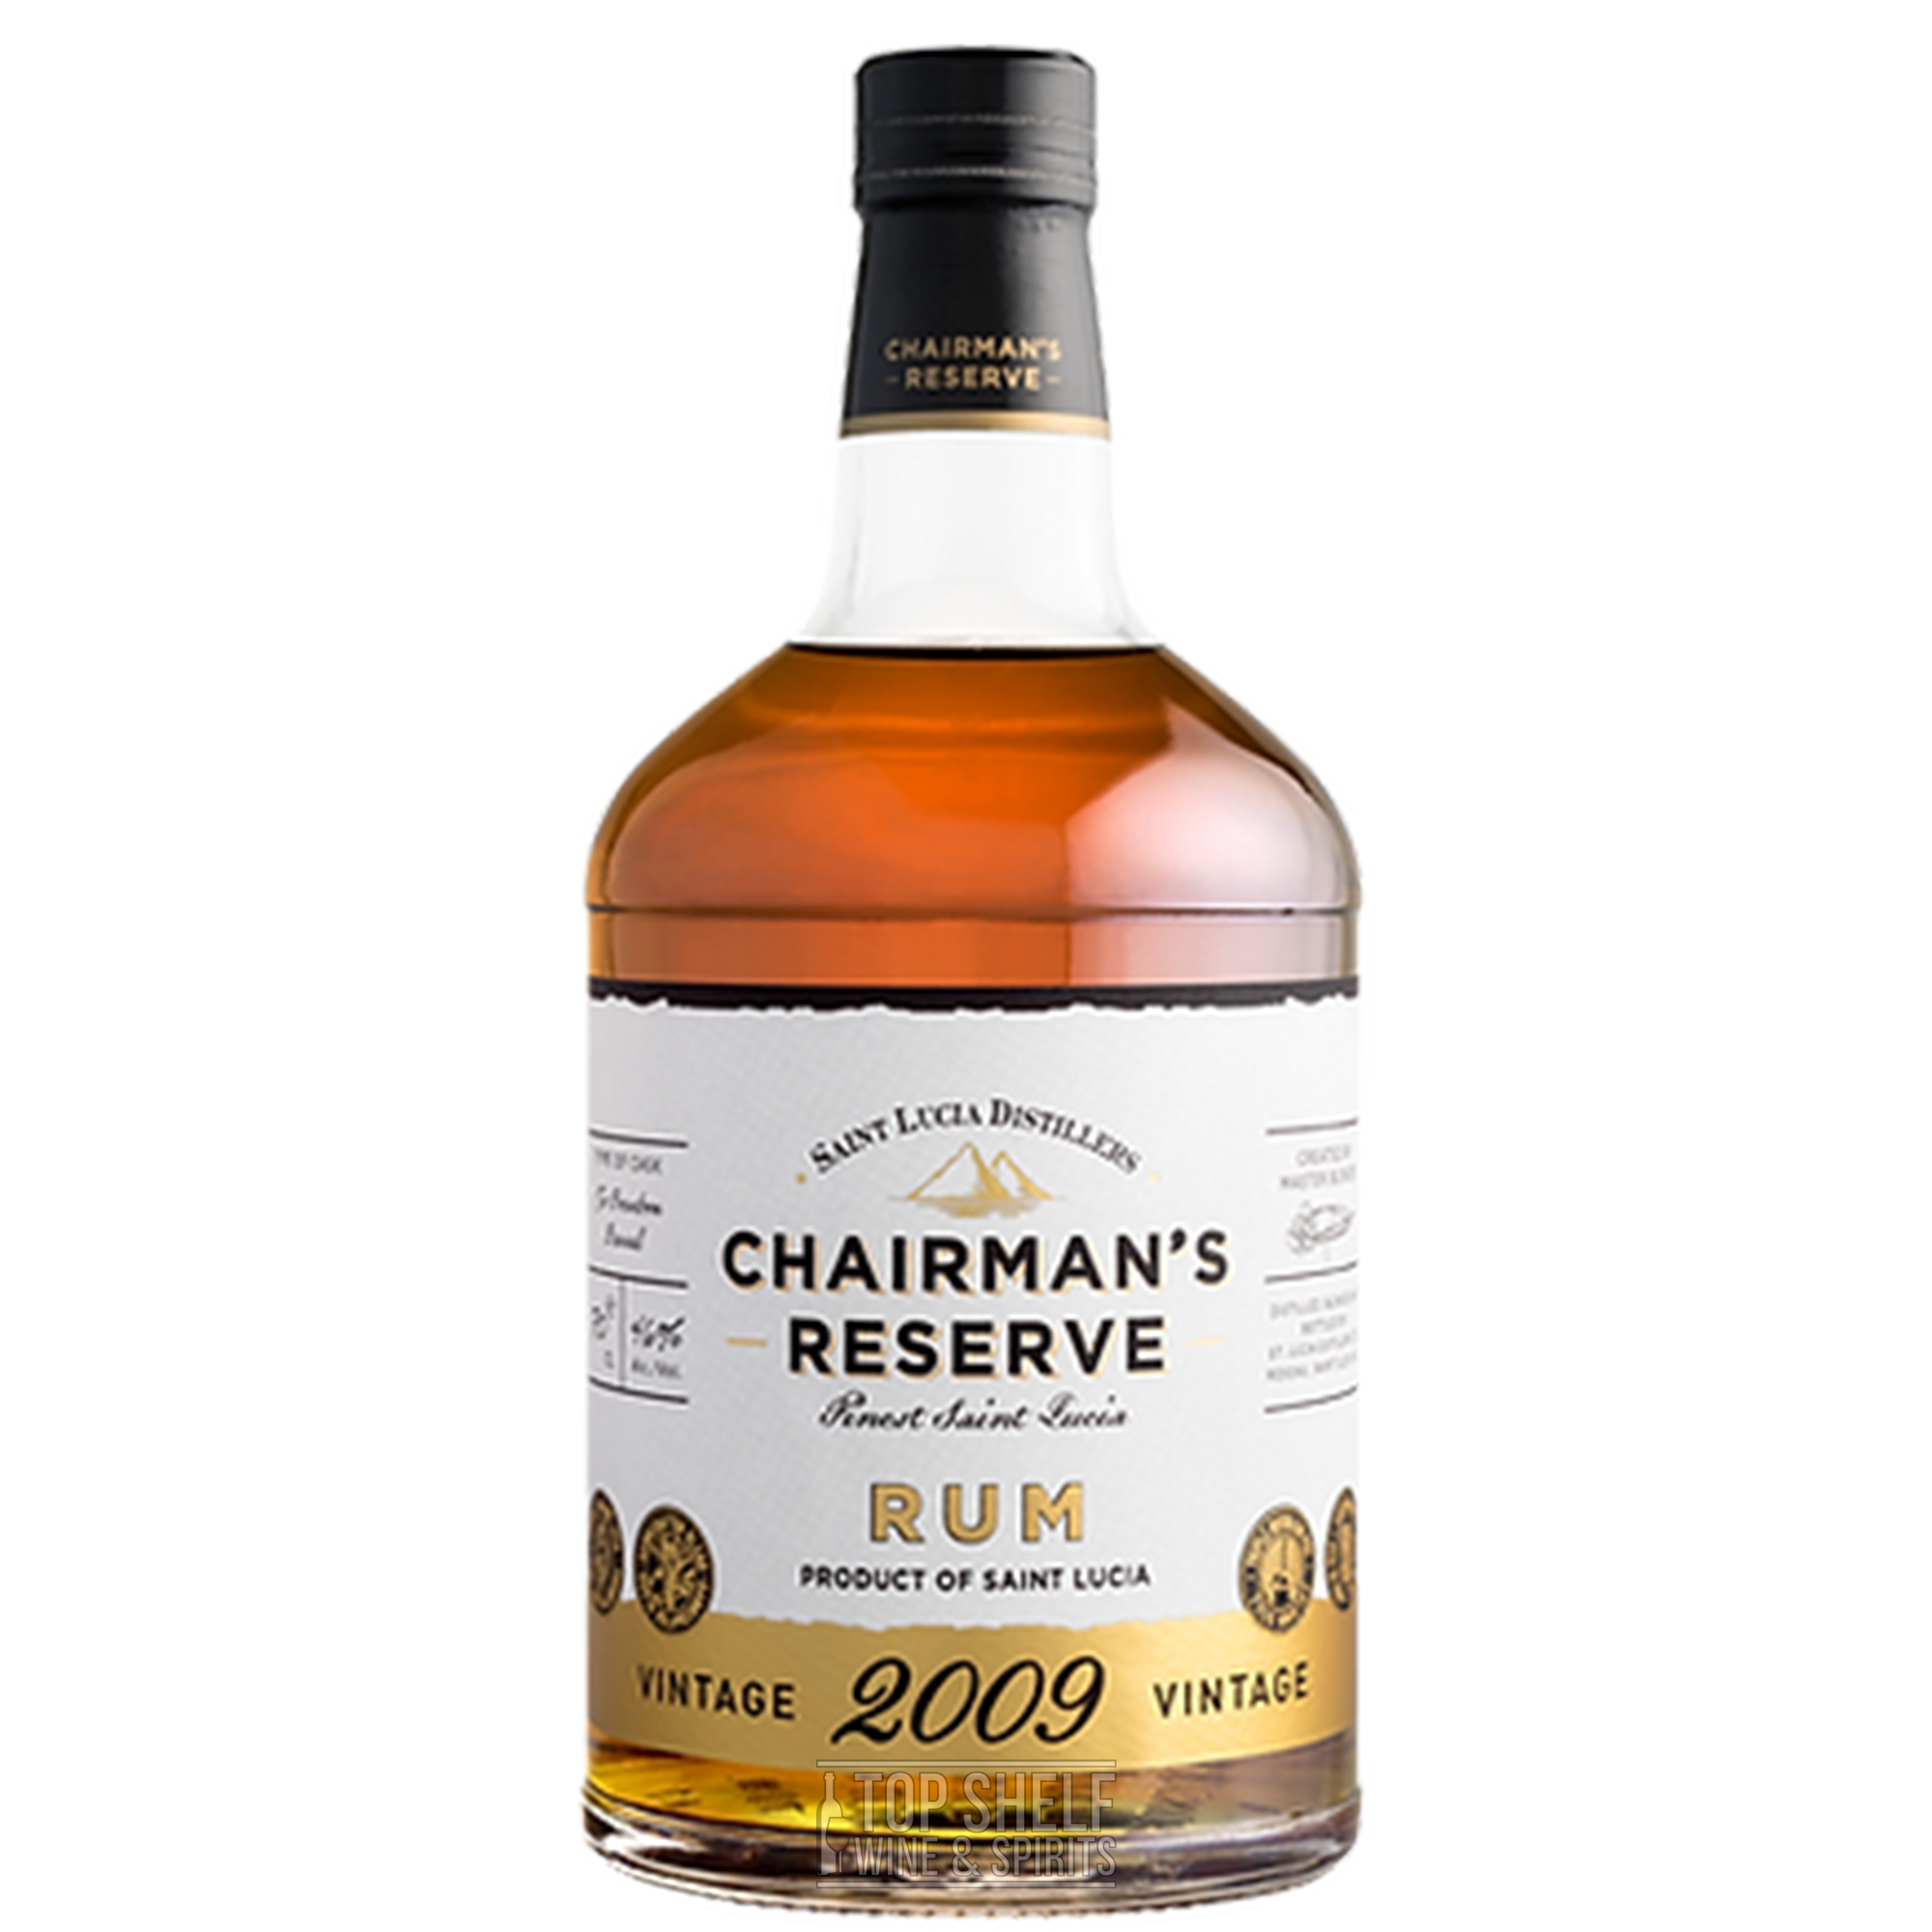 Chairman's Reserve 2009 Vintage Finest Saint Lucia Rum